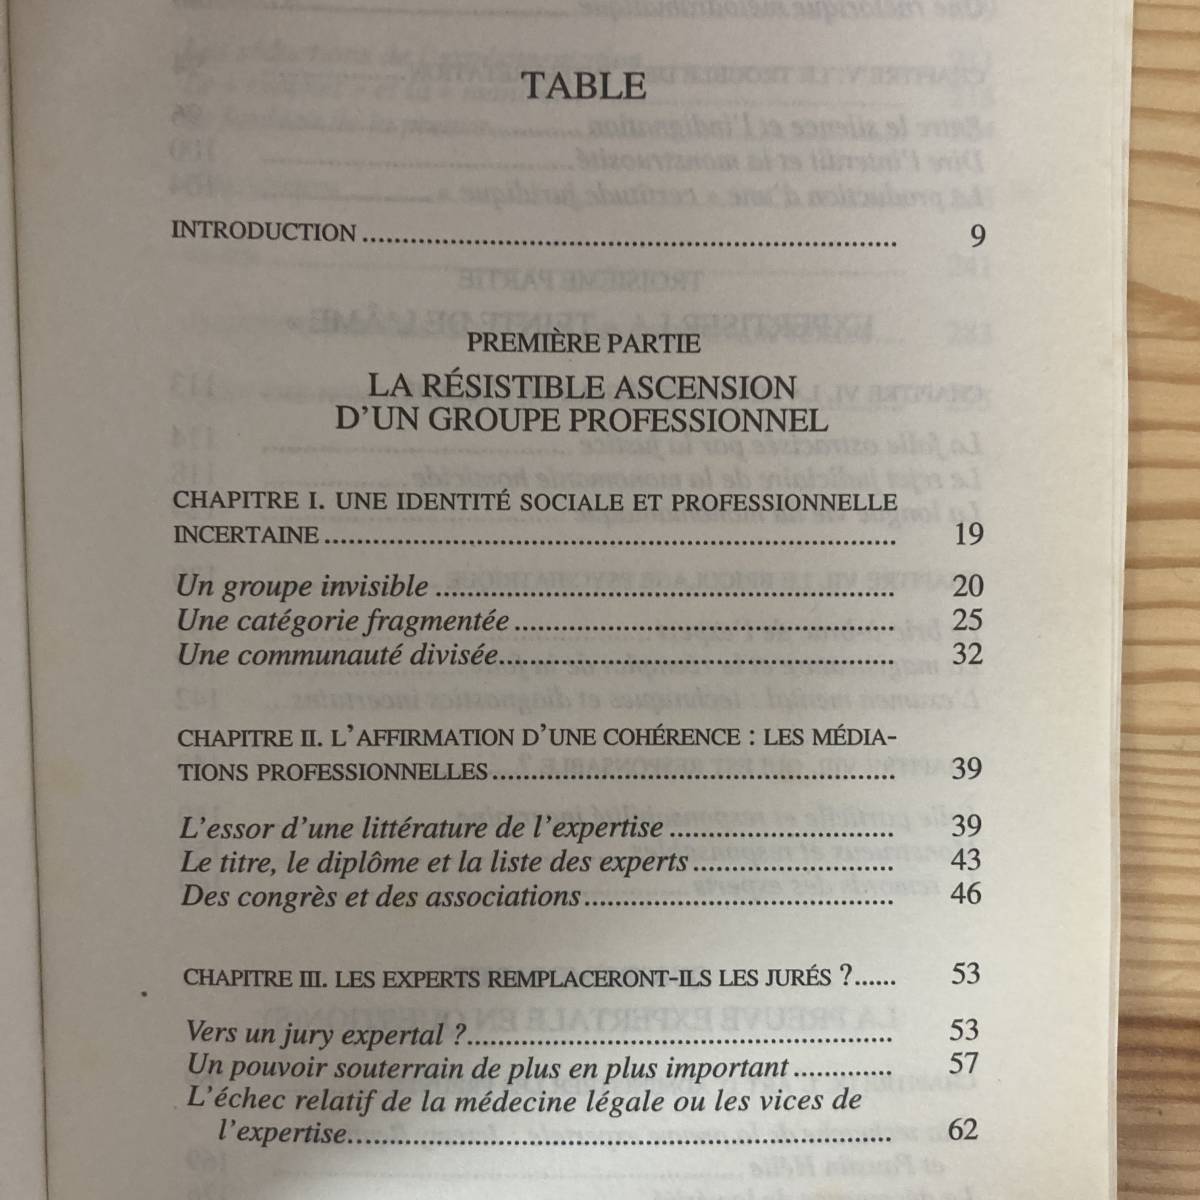 【仏語洋書】Les experts du crime: La medicine legale en France au XIXe siecle / Frederic Chauvaud（著）【フランス法医学】_画像3